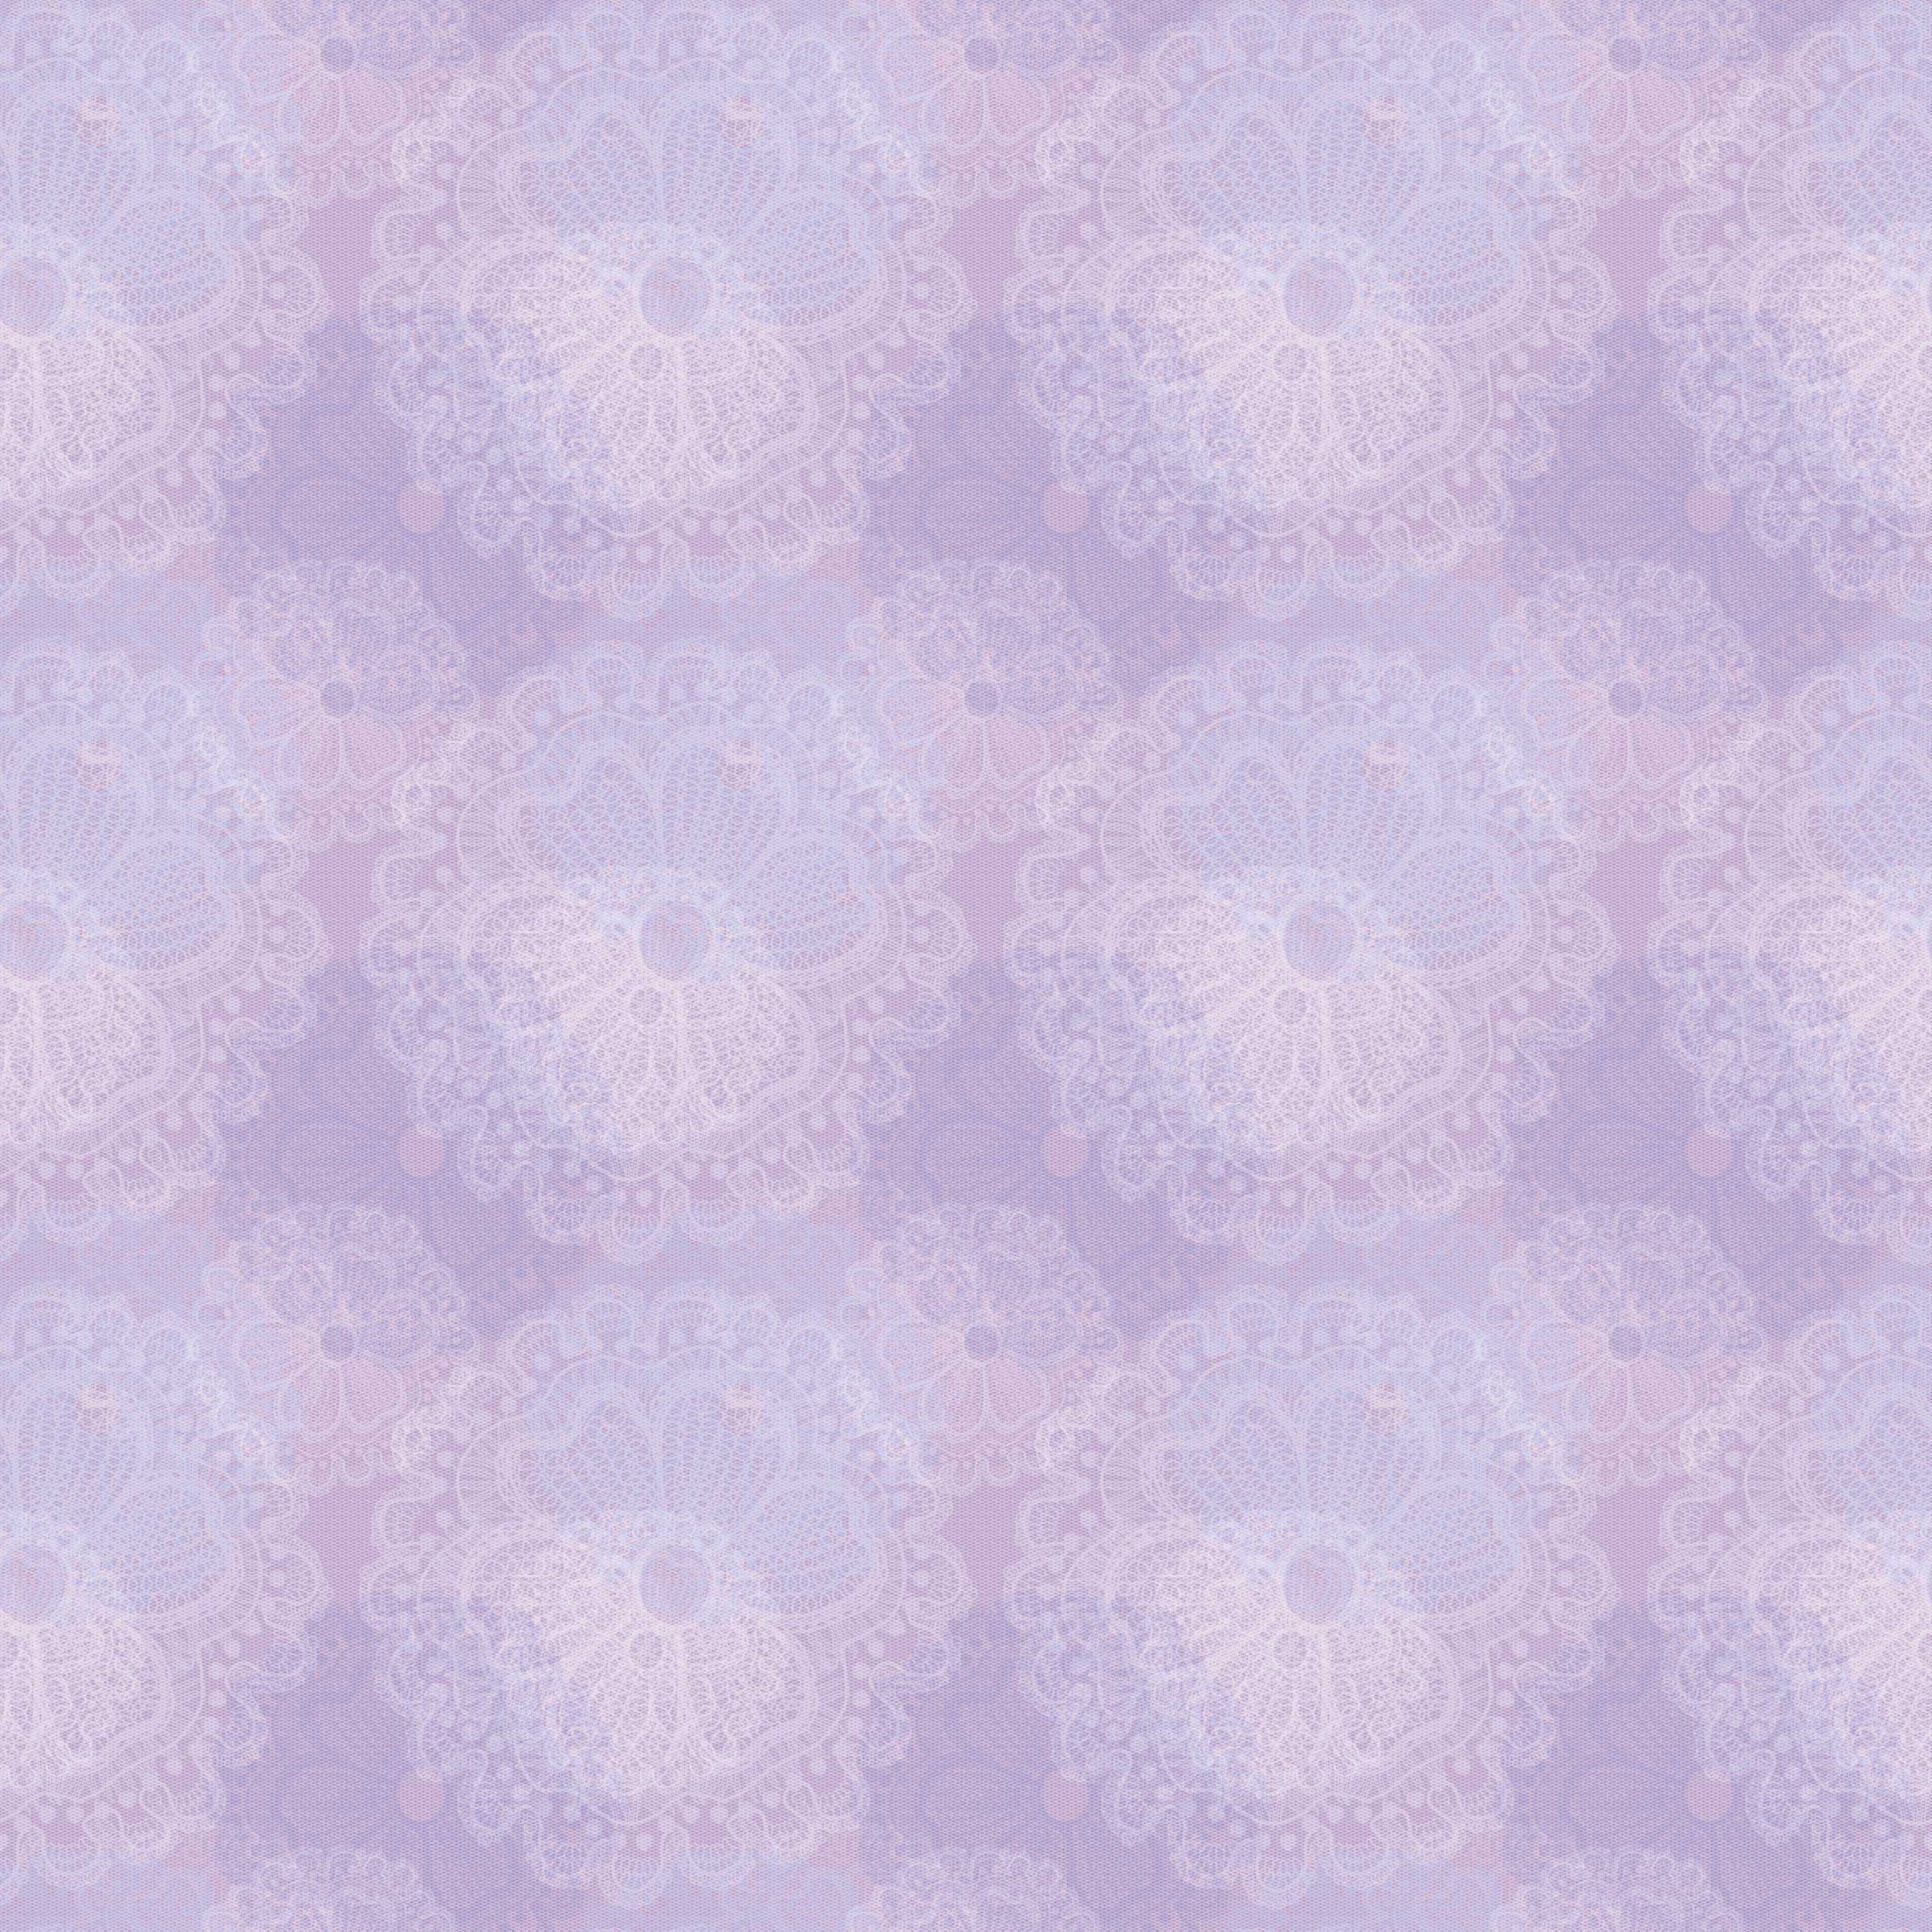 壁紙 背景イラスト 花の模様 柄 パターン No 052 紫 花模様の背景